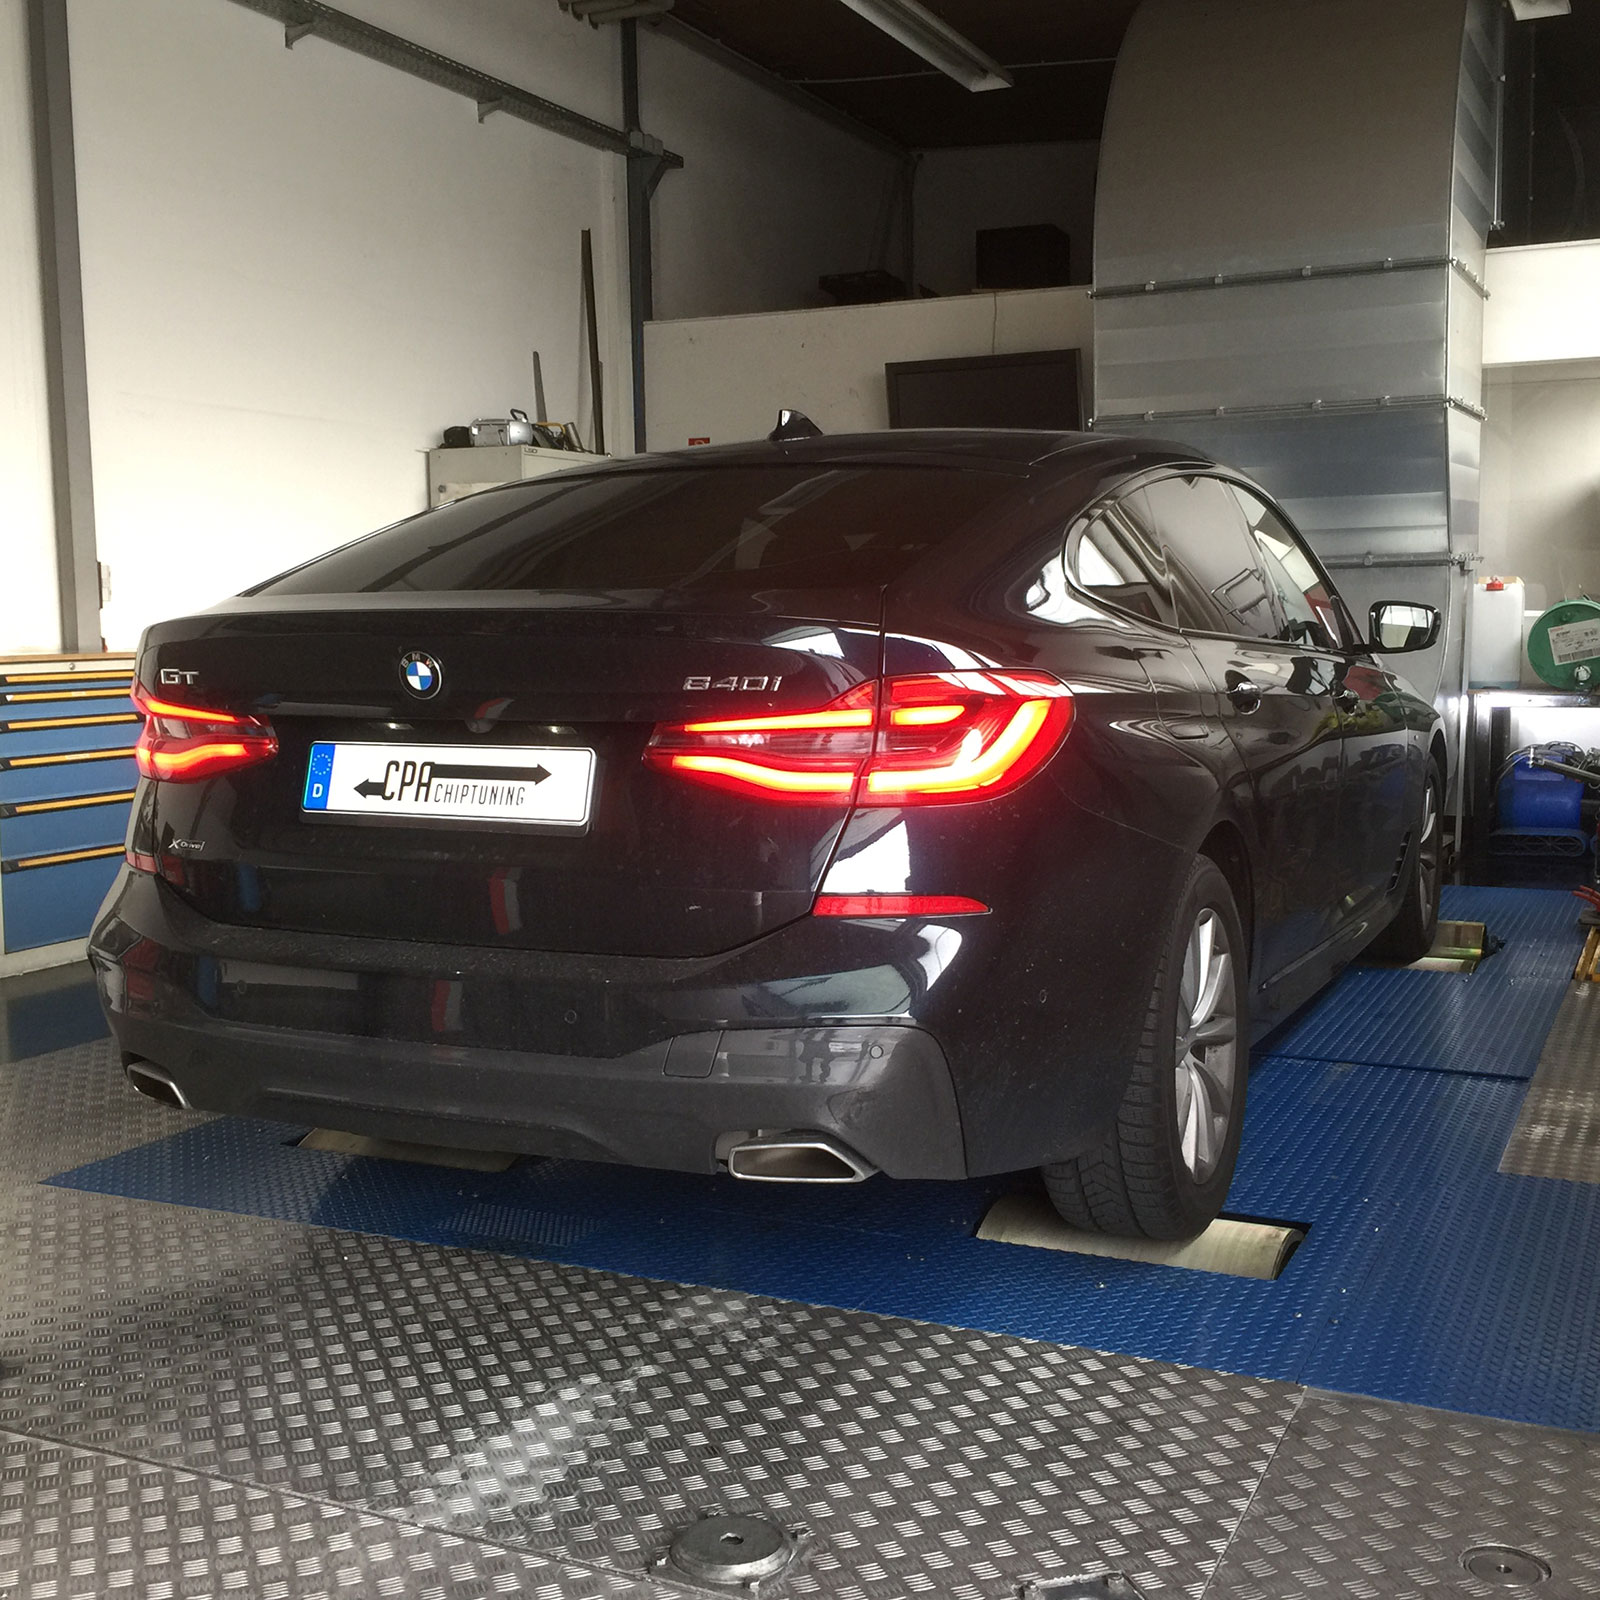 Chip de potencia BMW: desarrollado en el banco de pruebas